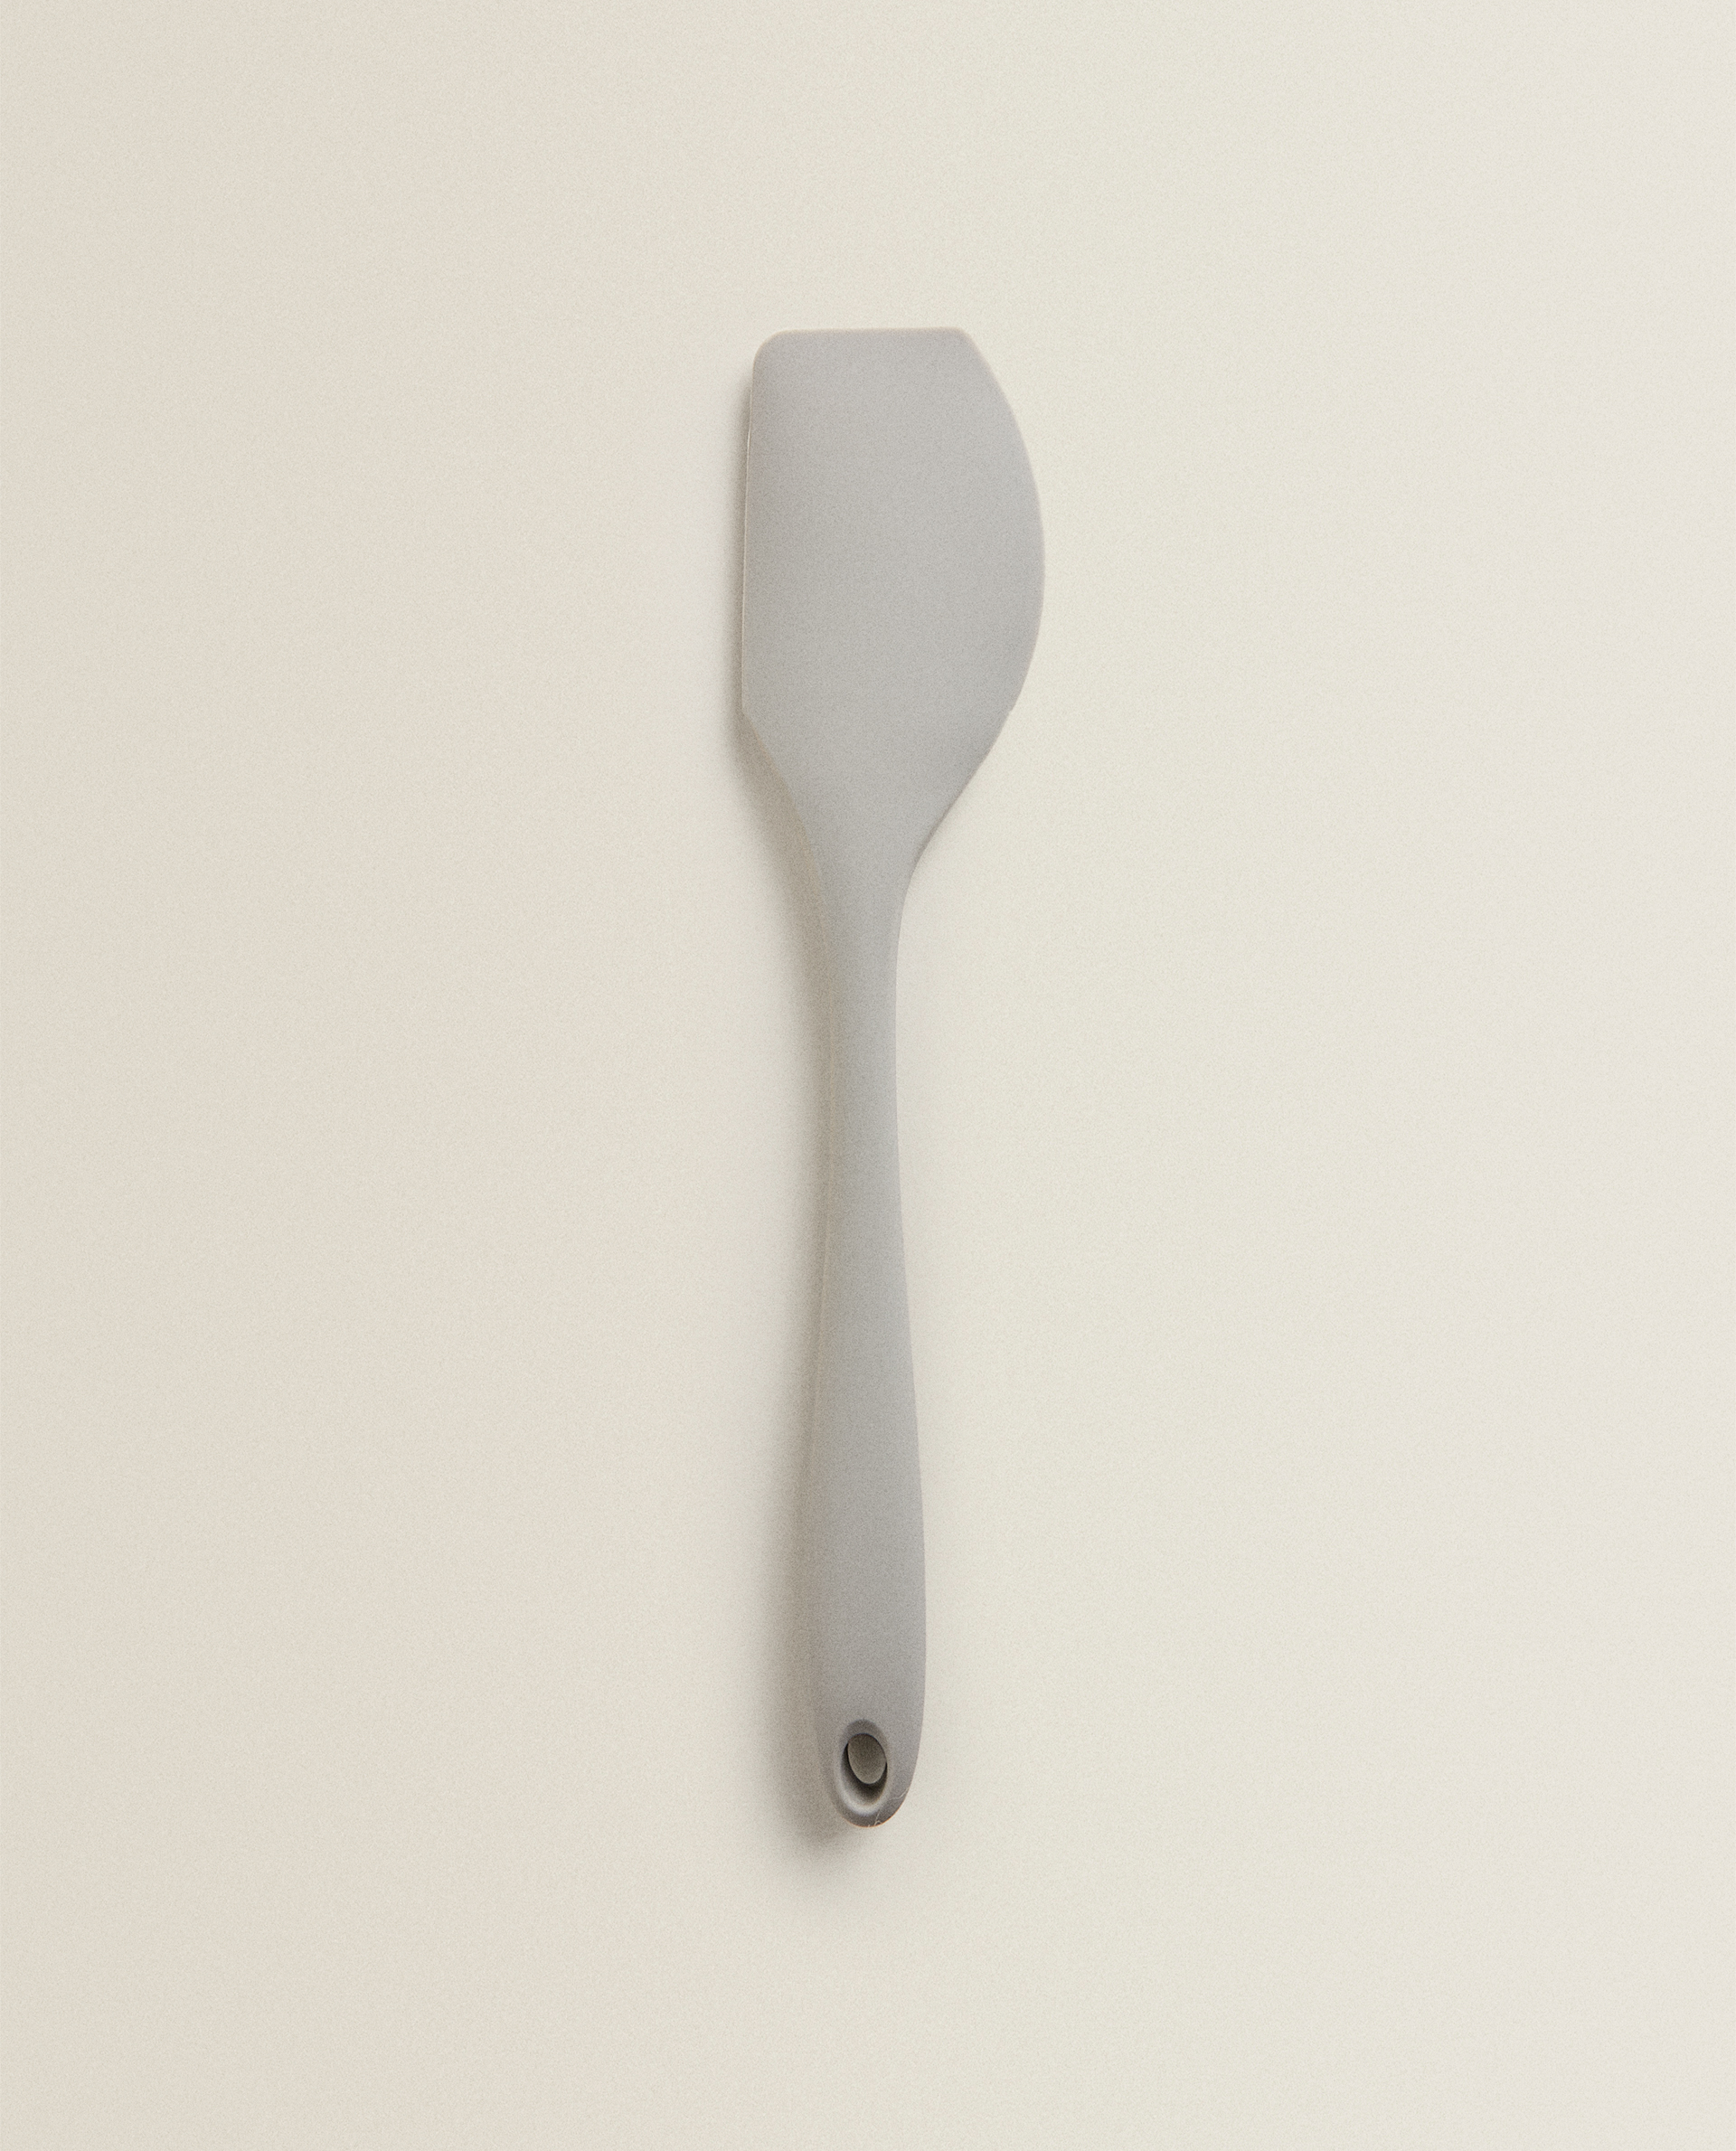 soft silicone spatula